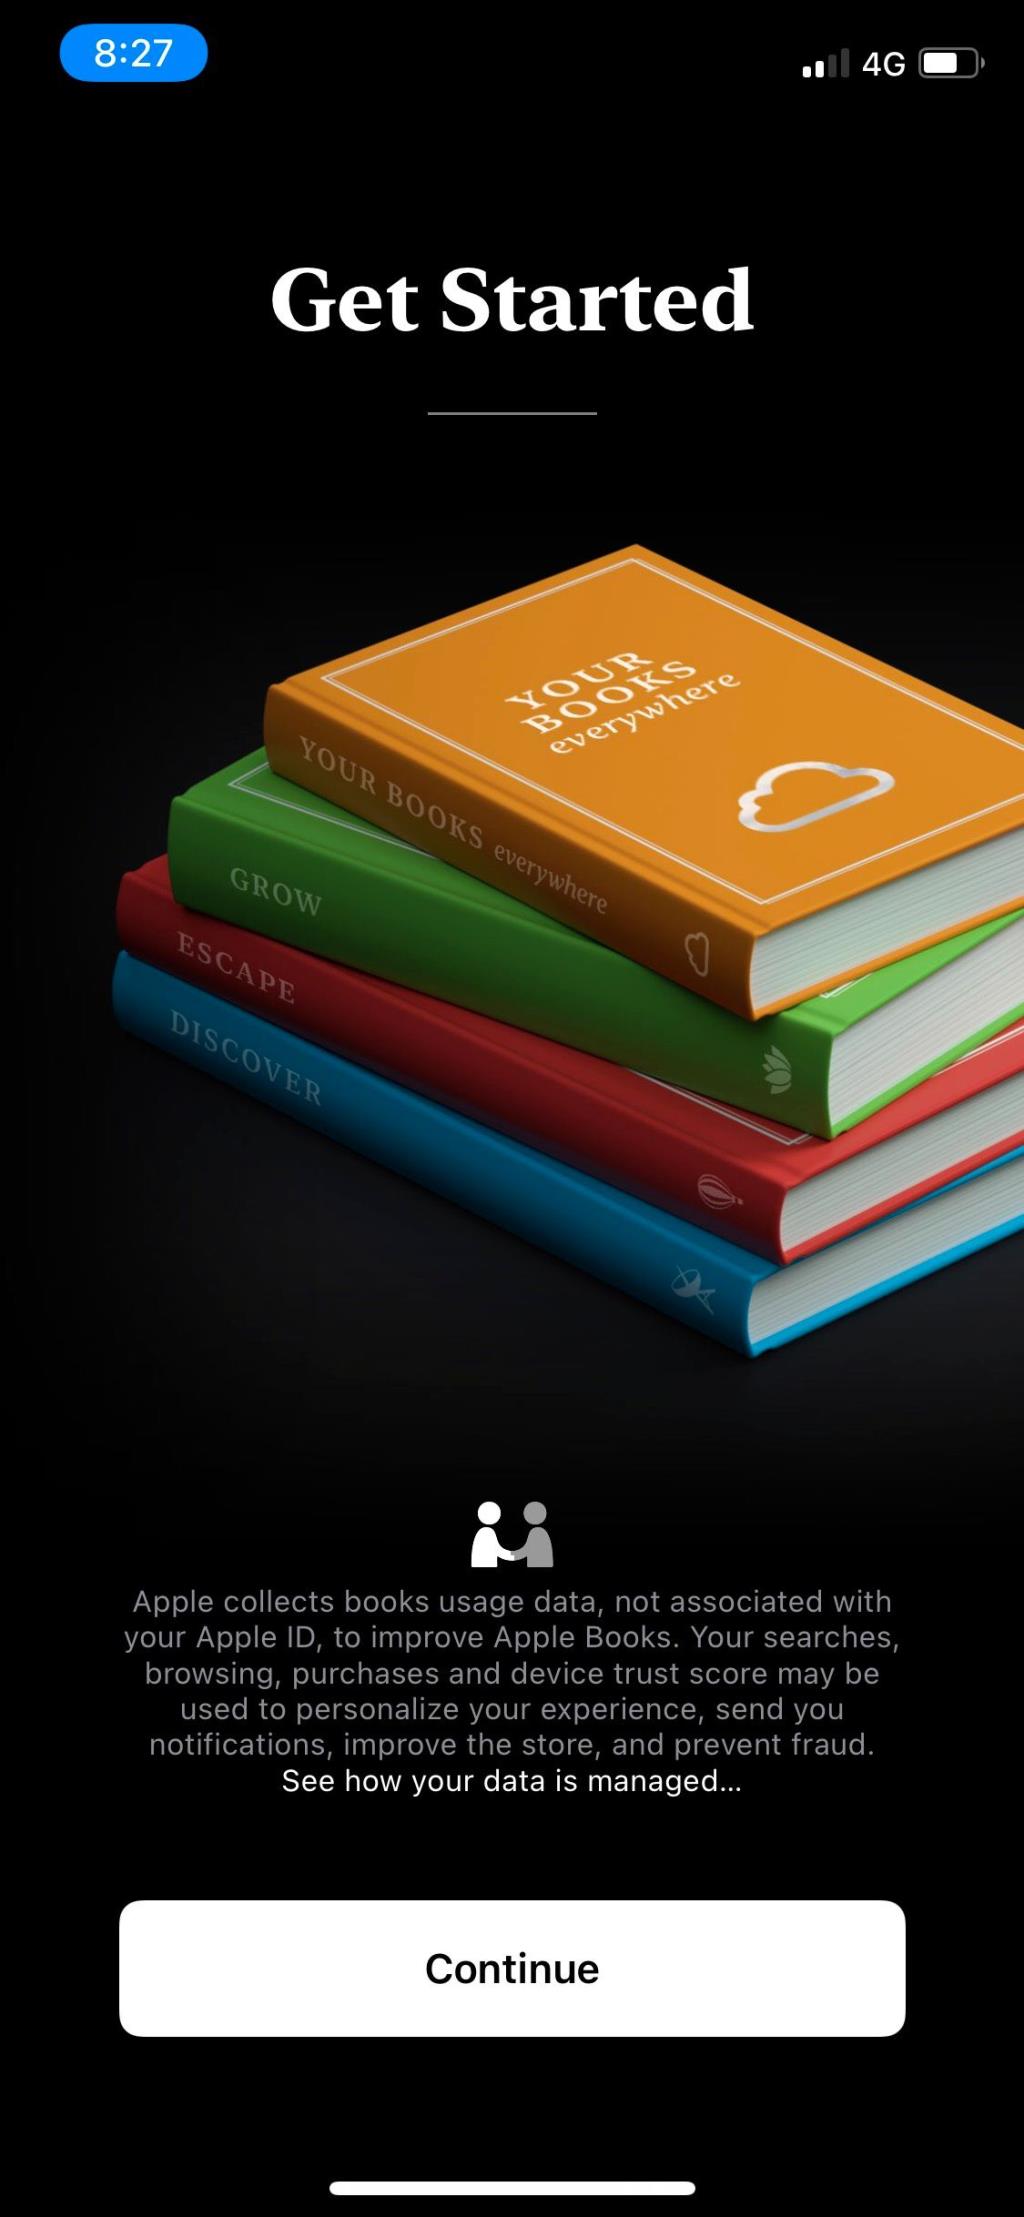 De 6 beste audioboek-apps voor iPhone en iPad